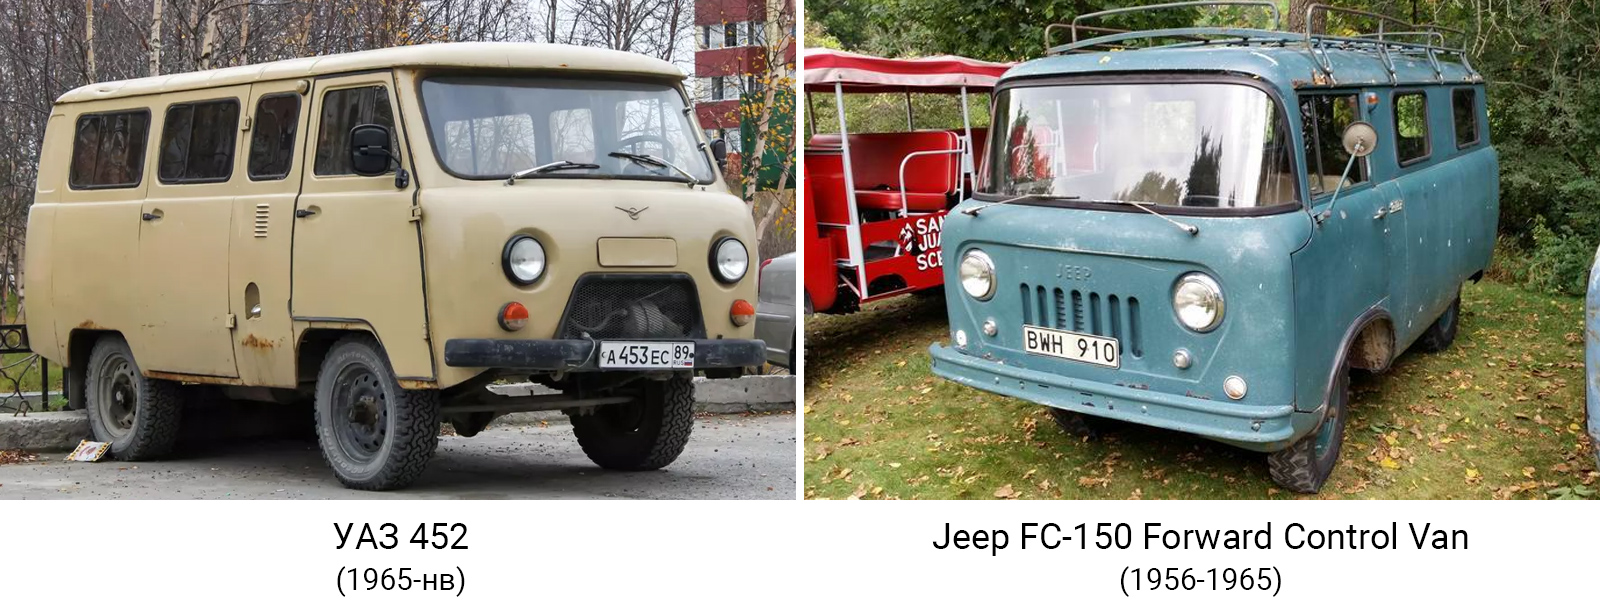 УАЗ 452 и Jeep FC-150 van